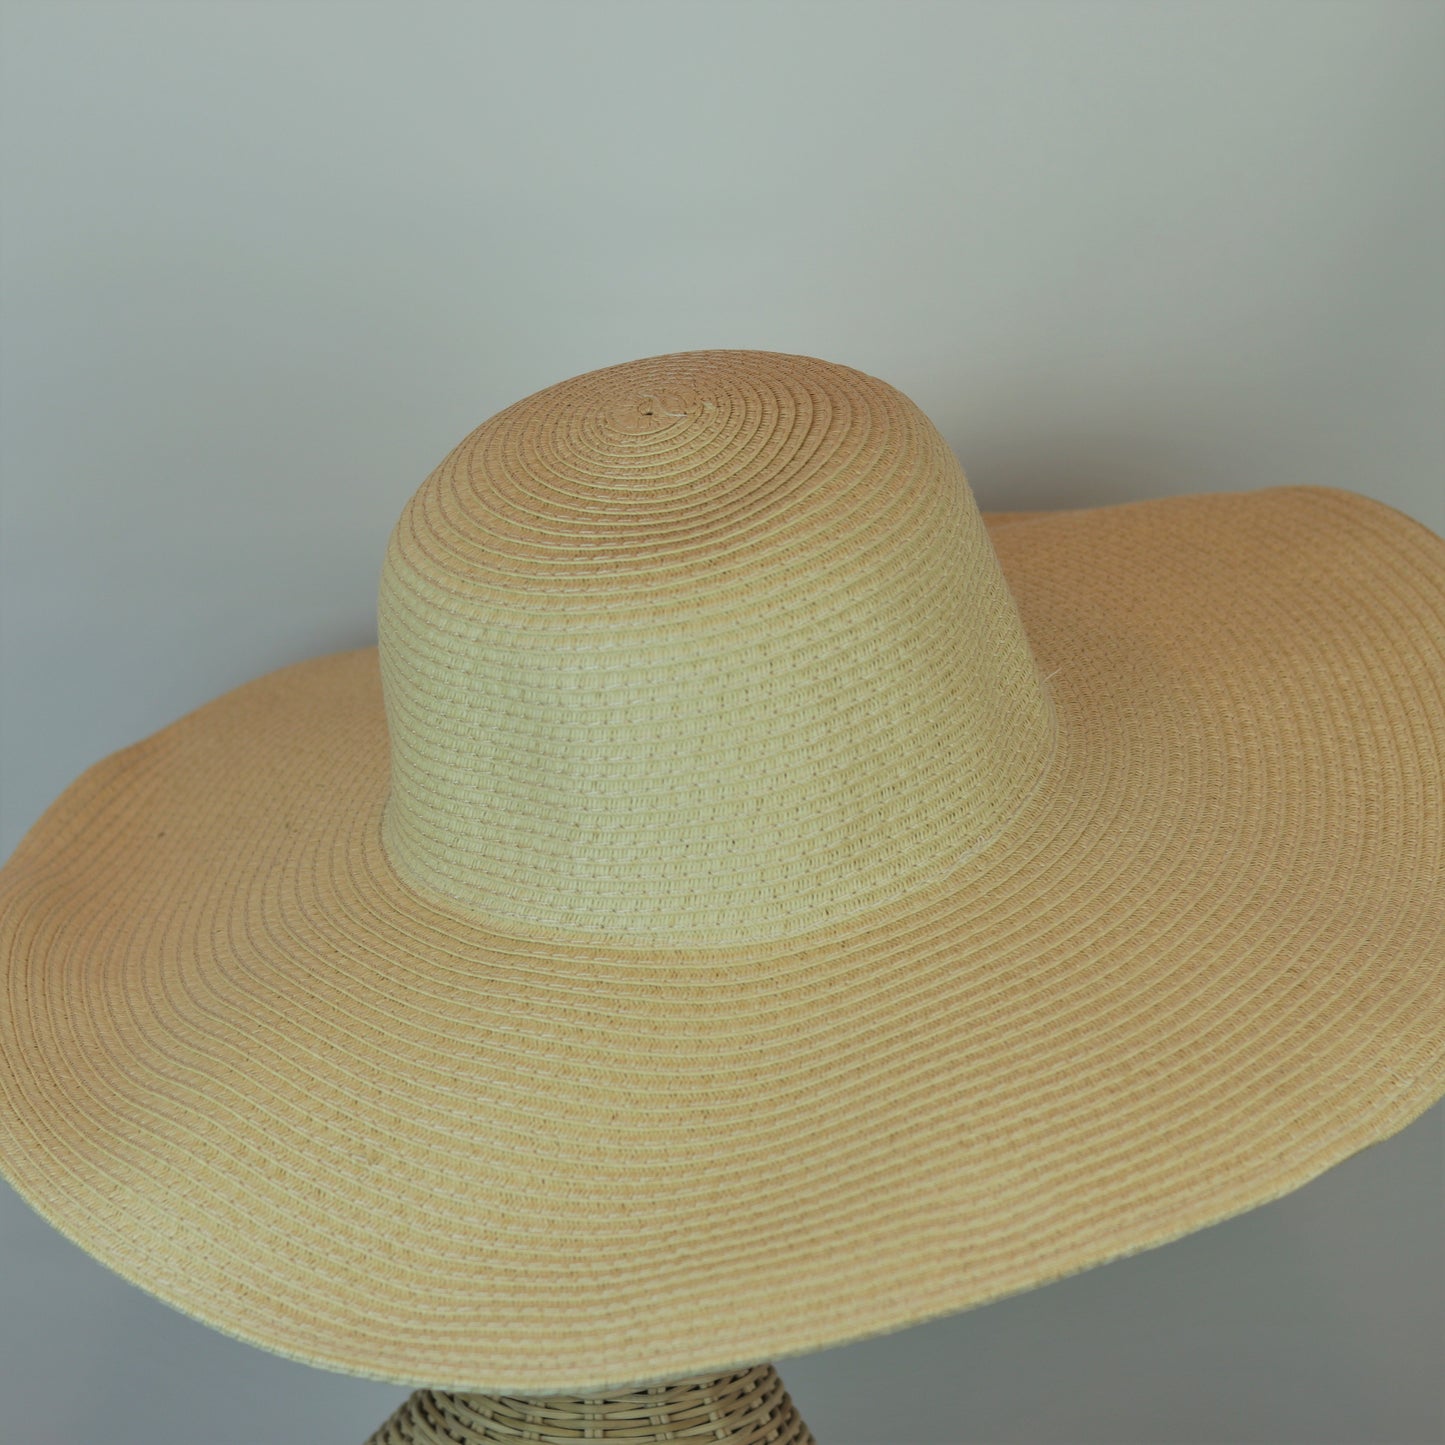 Cartagena Hat